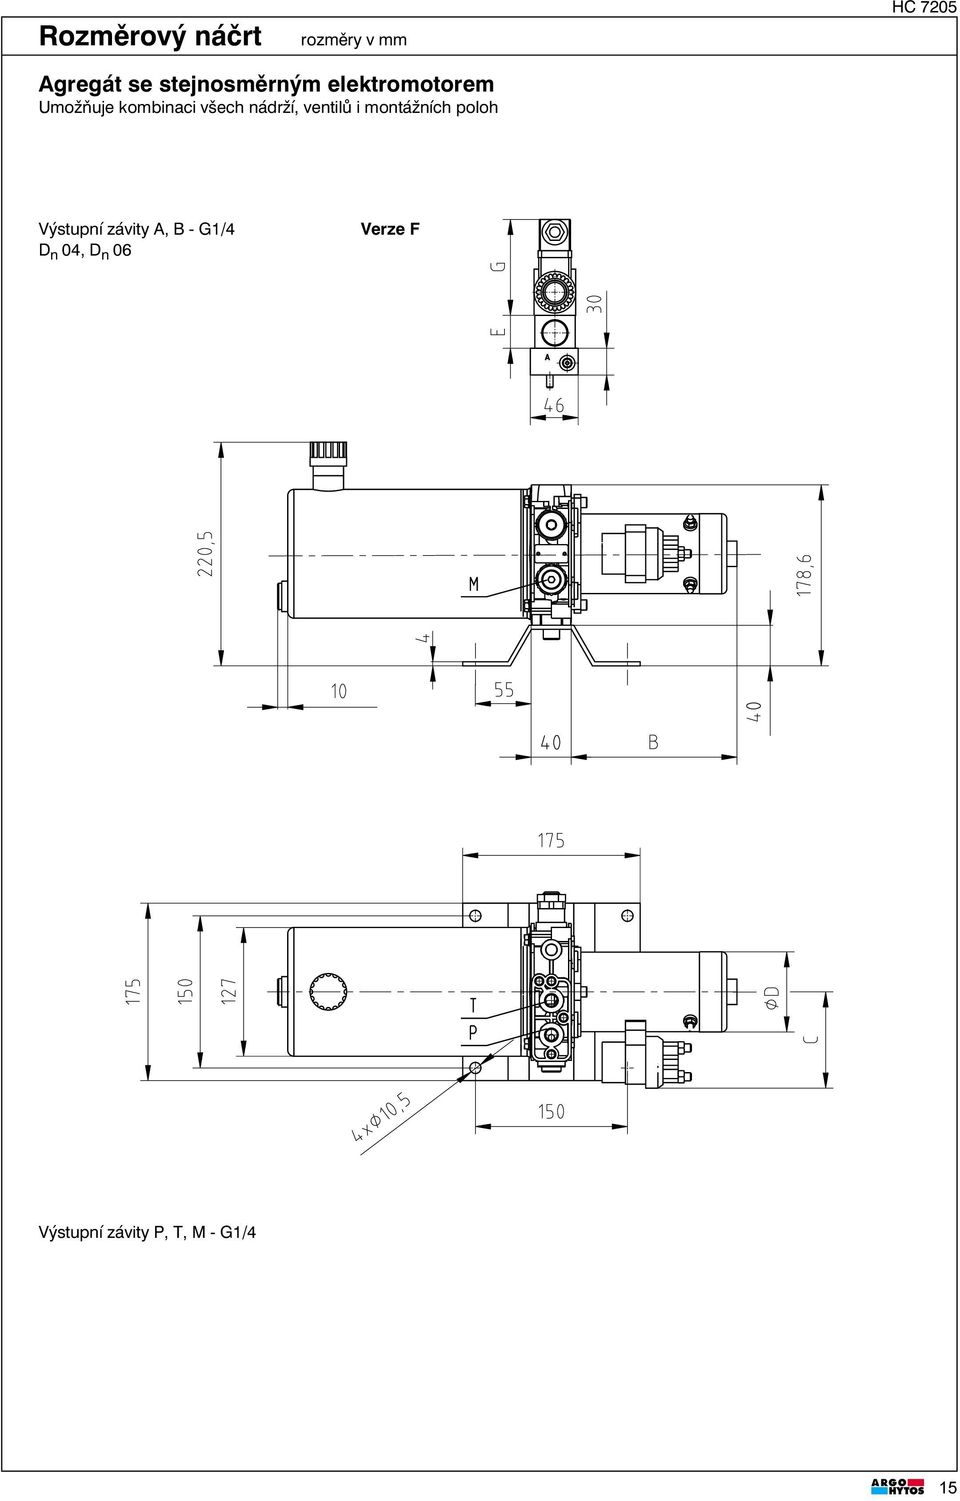 nádrží, ventilů i montážních poloh Výstupní závity A, B